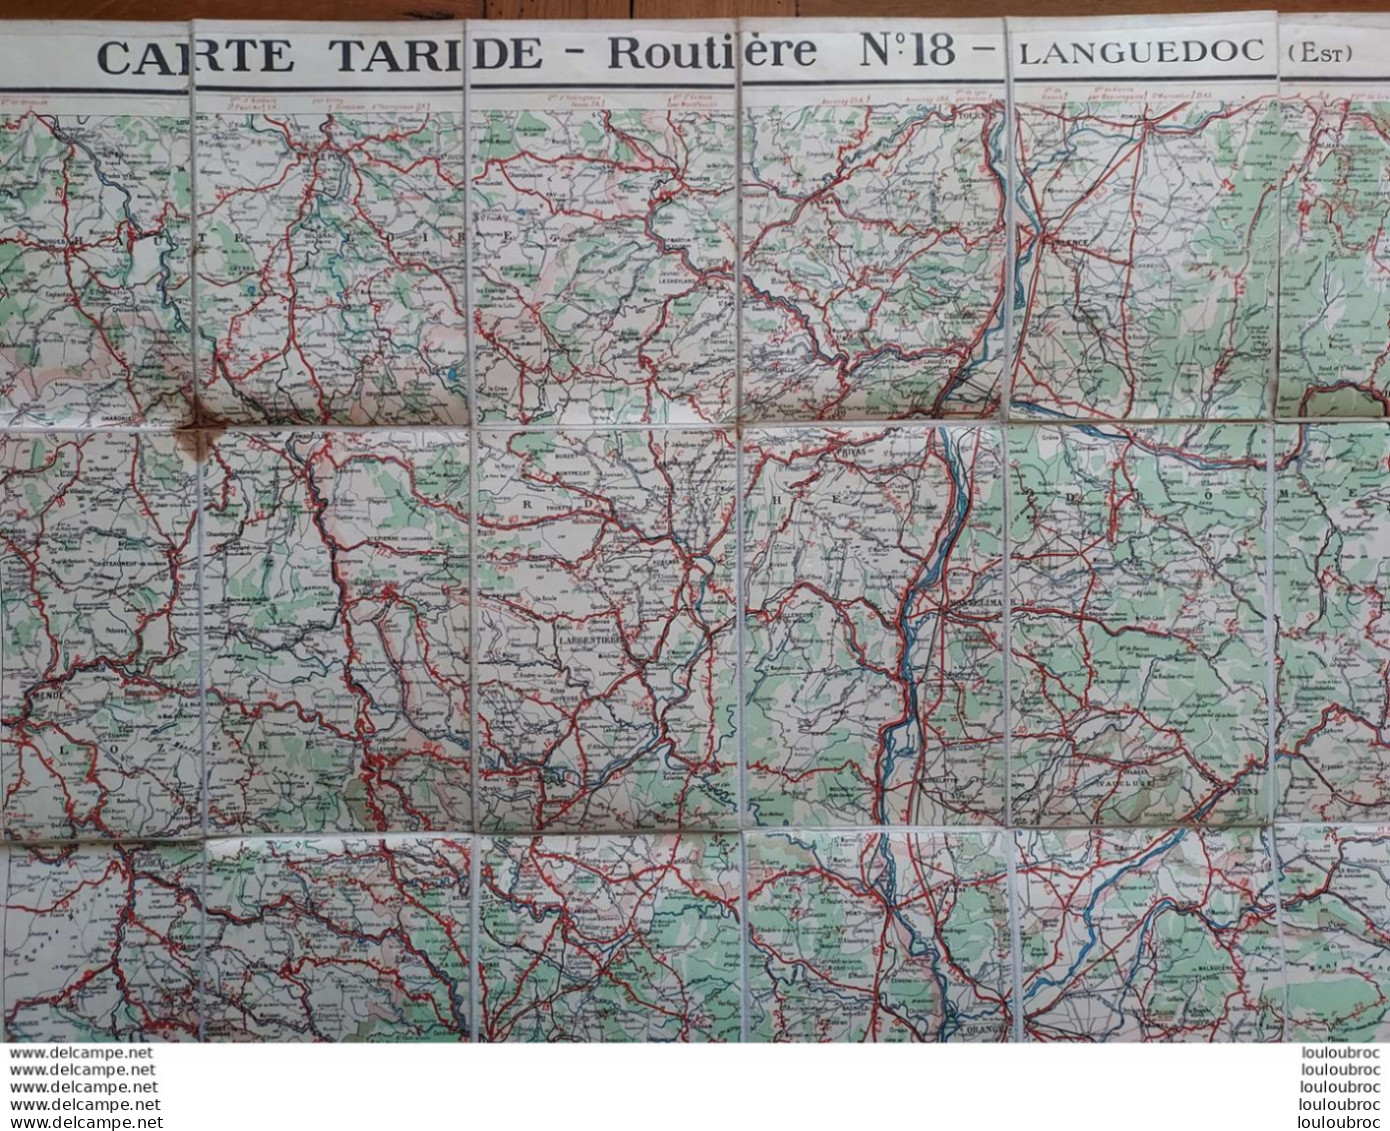 CARTE ROUTIERE TARIDE TOILEE N°18 LANGUEDOC EST - Strassenkarten